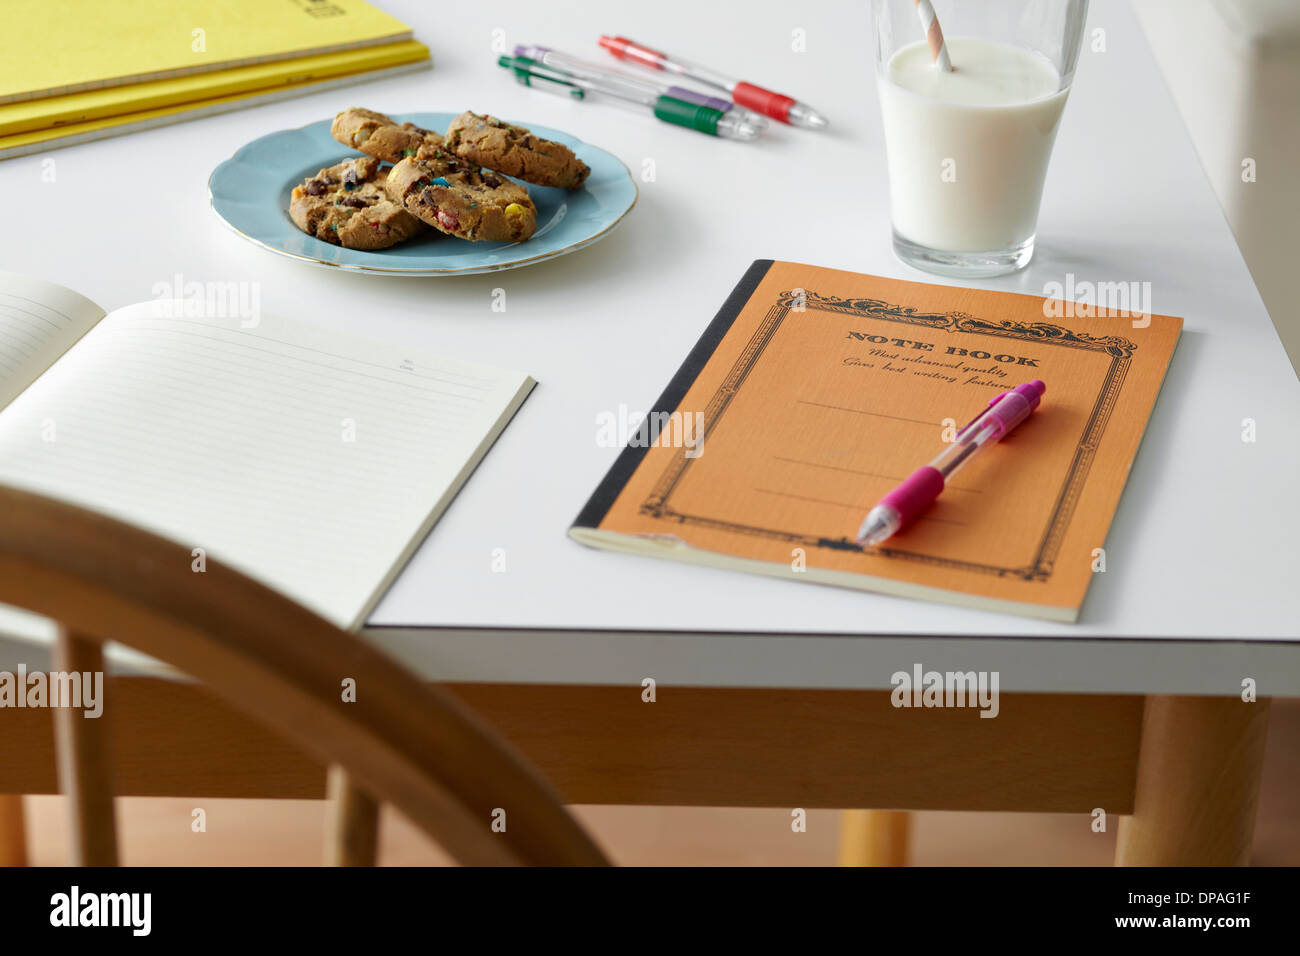 Table de cuisine La vie encore avec des ordinateurs portables, des biscuits et du lait Banque D'Images